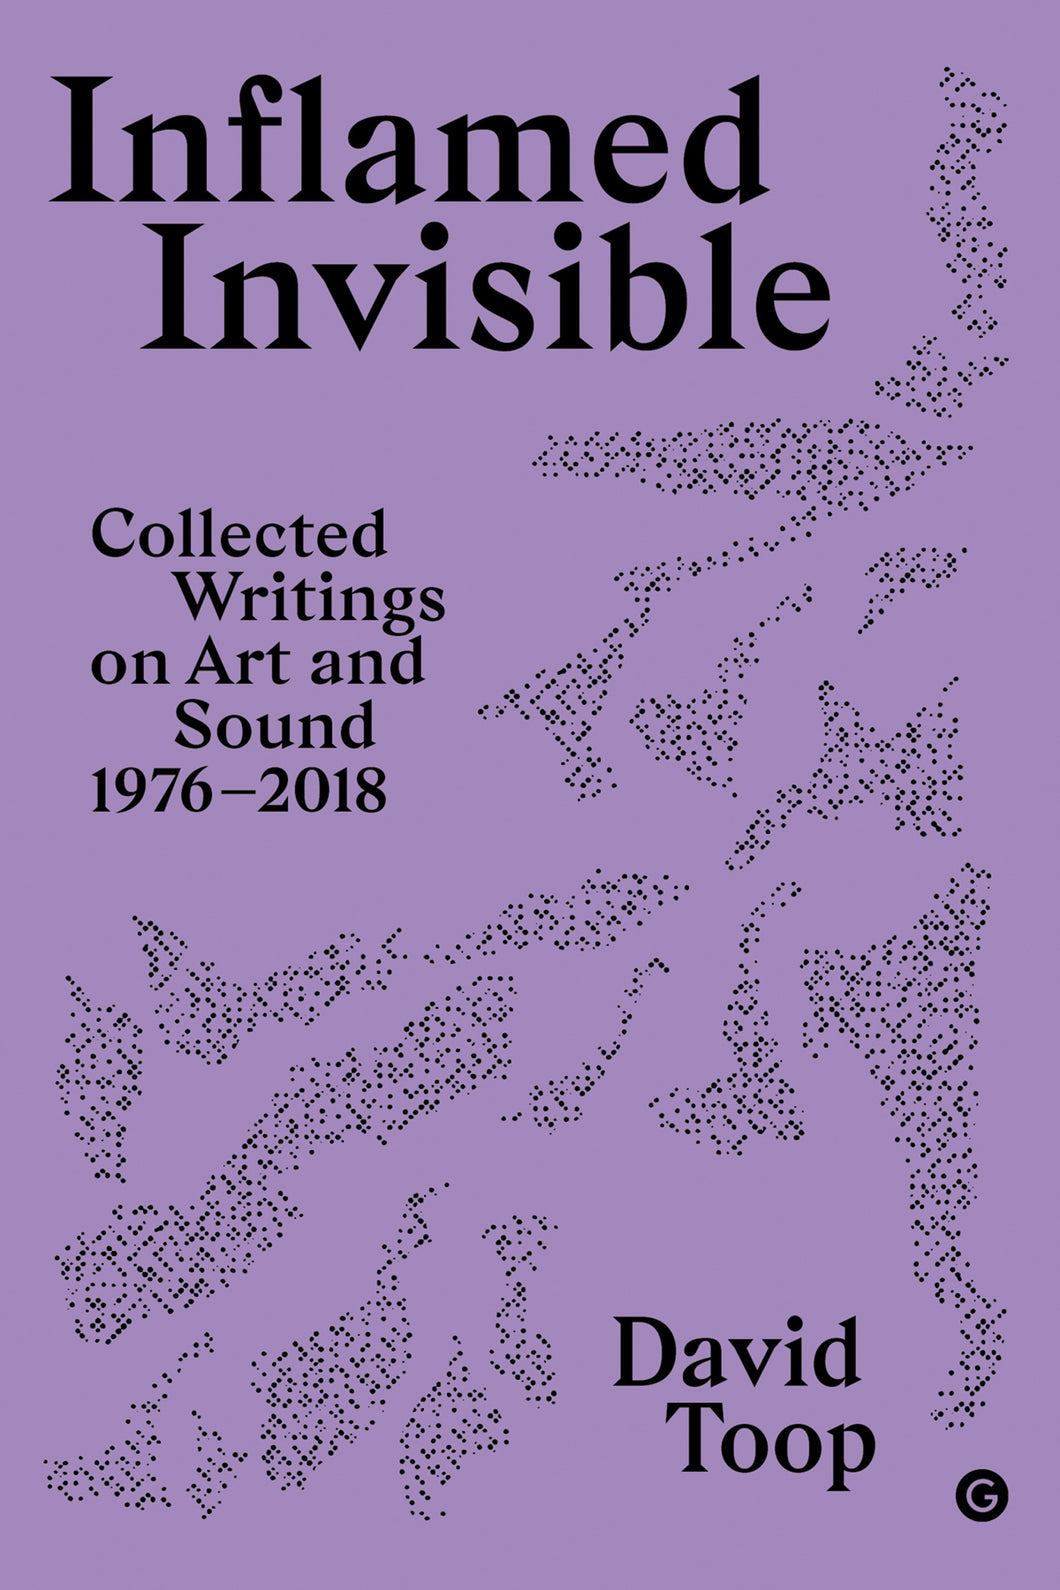 Inflamed Invisible : Collected Writings on Art and Sound, 1976-2018 ร้านหนังสือและสิ่งของ เป็นร้านหนังสือภาษาอังกฤษหายาก และร้านกาแฟ หรือ บุ๊คคาเฟ่ ตั้งอยู่สุขุมวิท กรุงเทพ